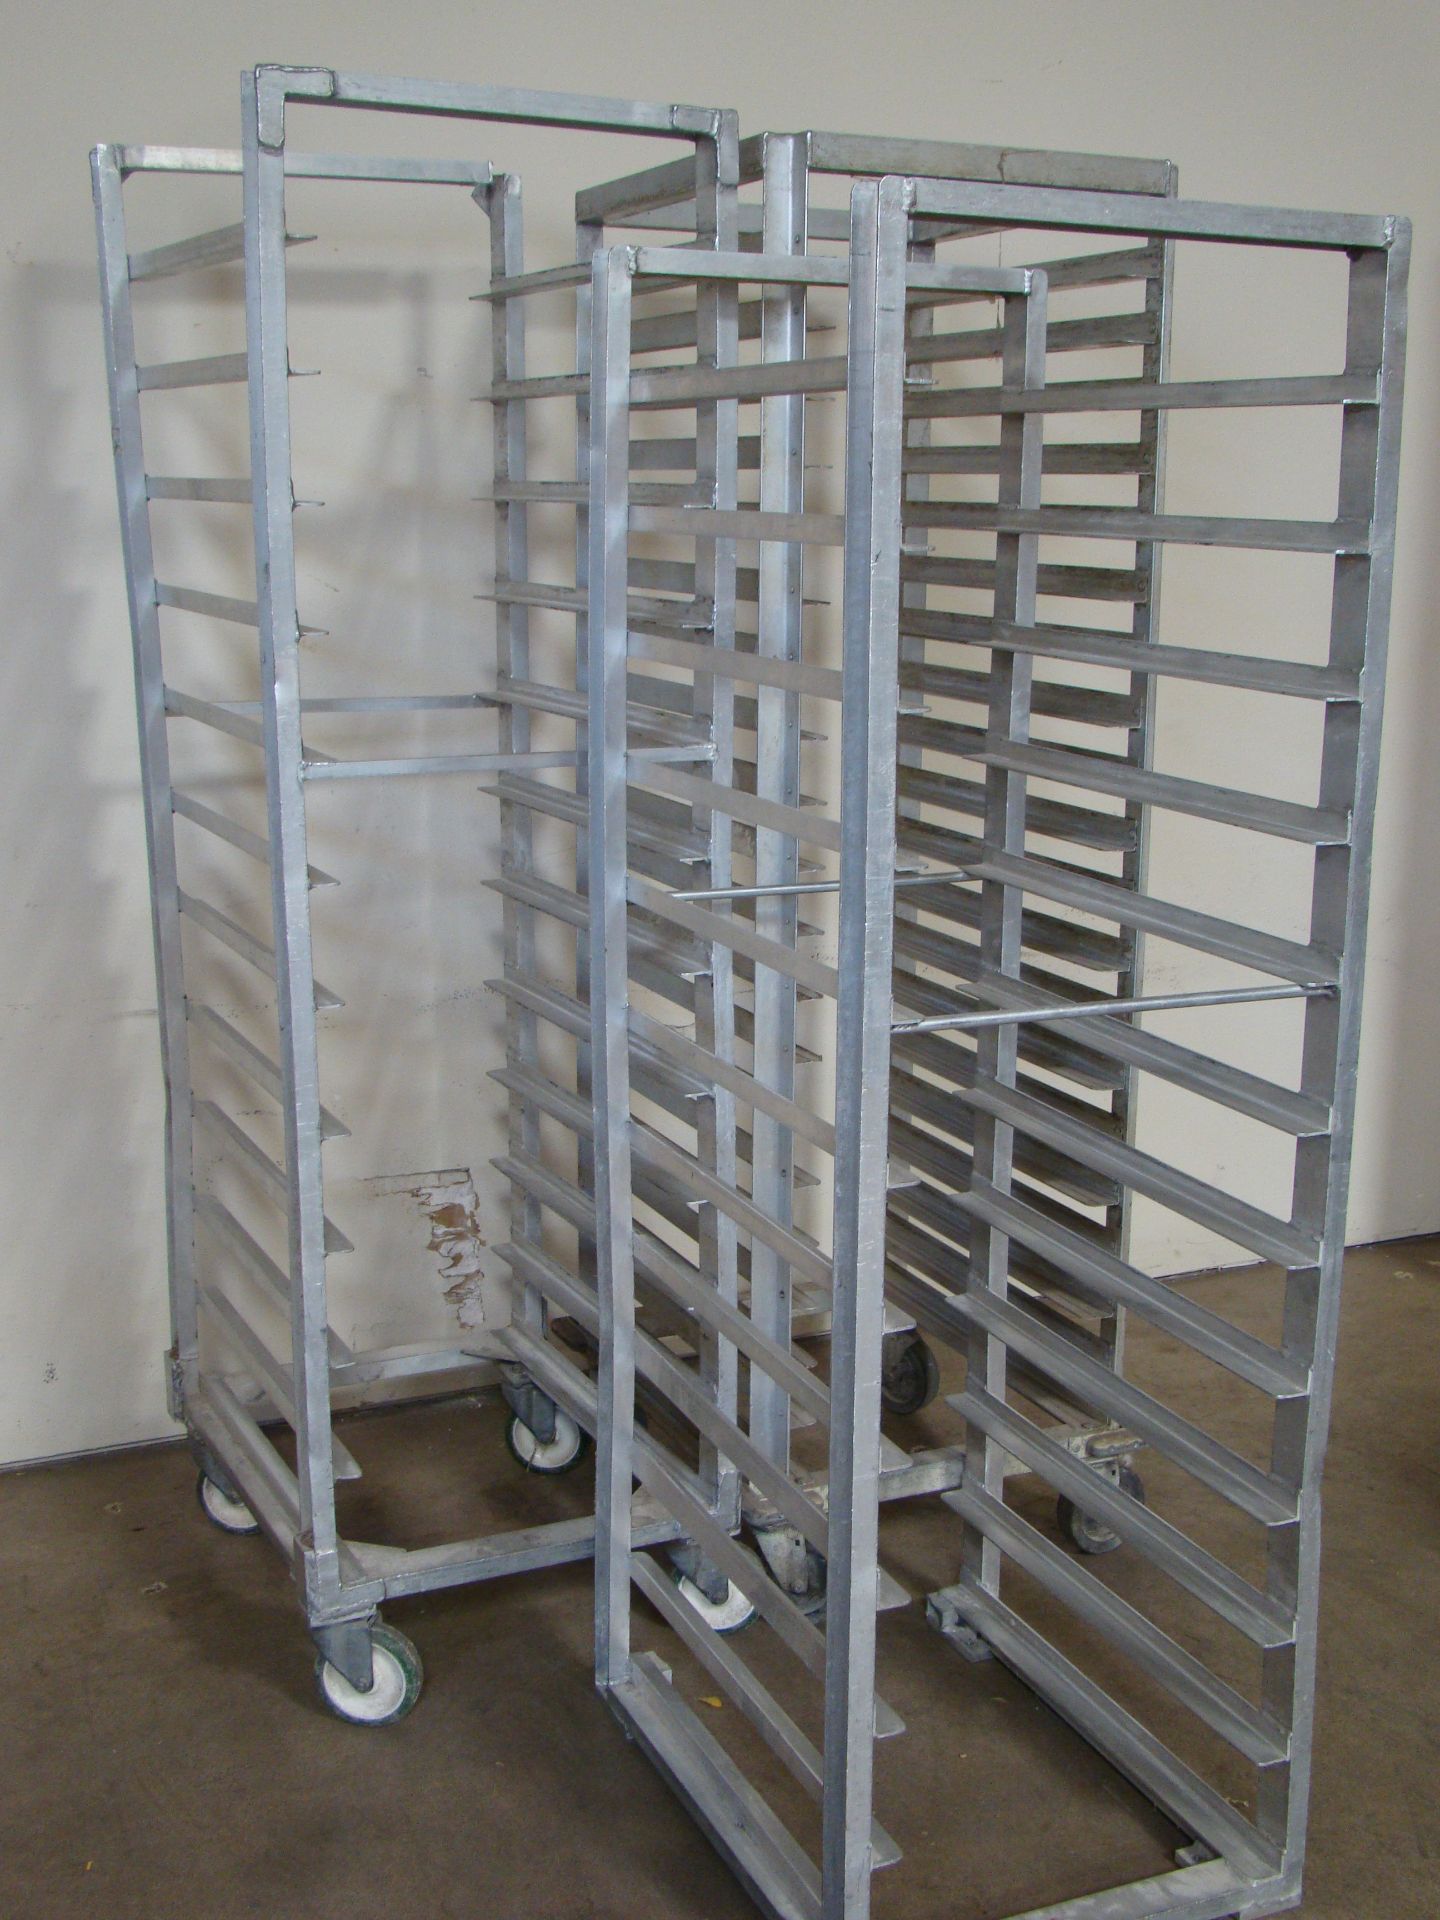 3 - Heavy Duty Aluminum Bakers Racks (2-20 shelves, 1-12 shelf) - Bild 2 aus 3